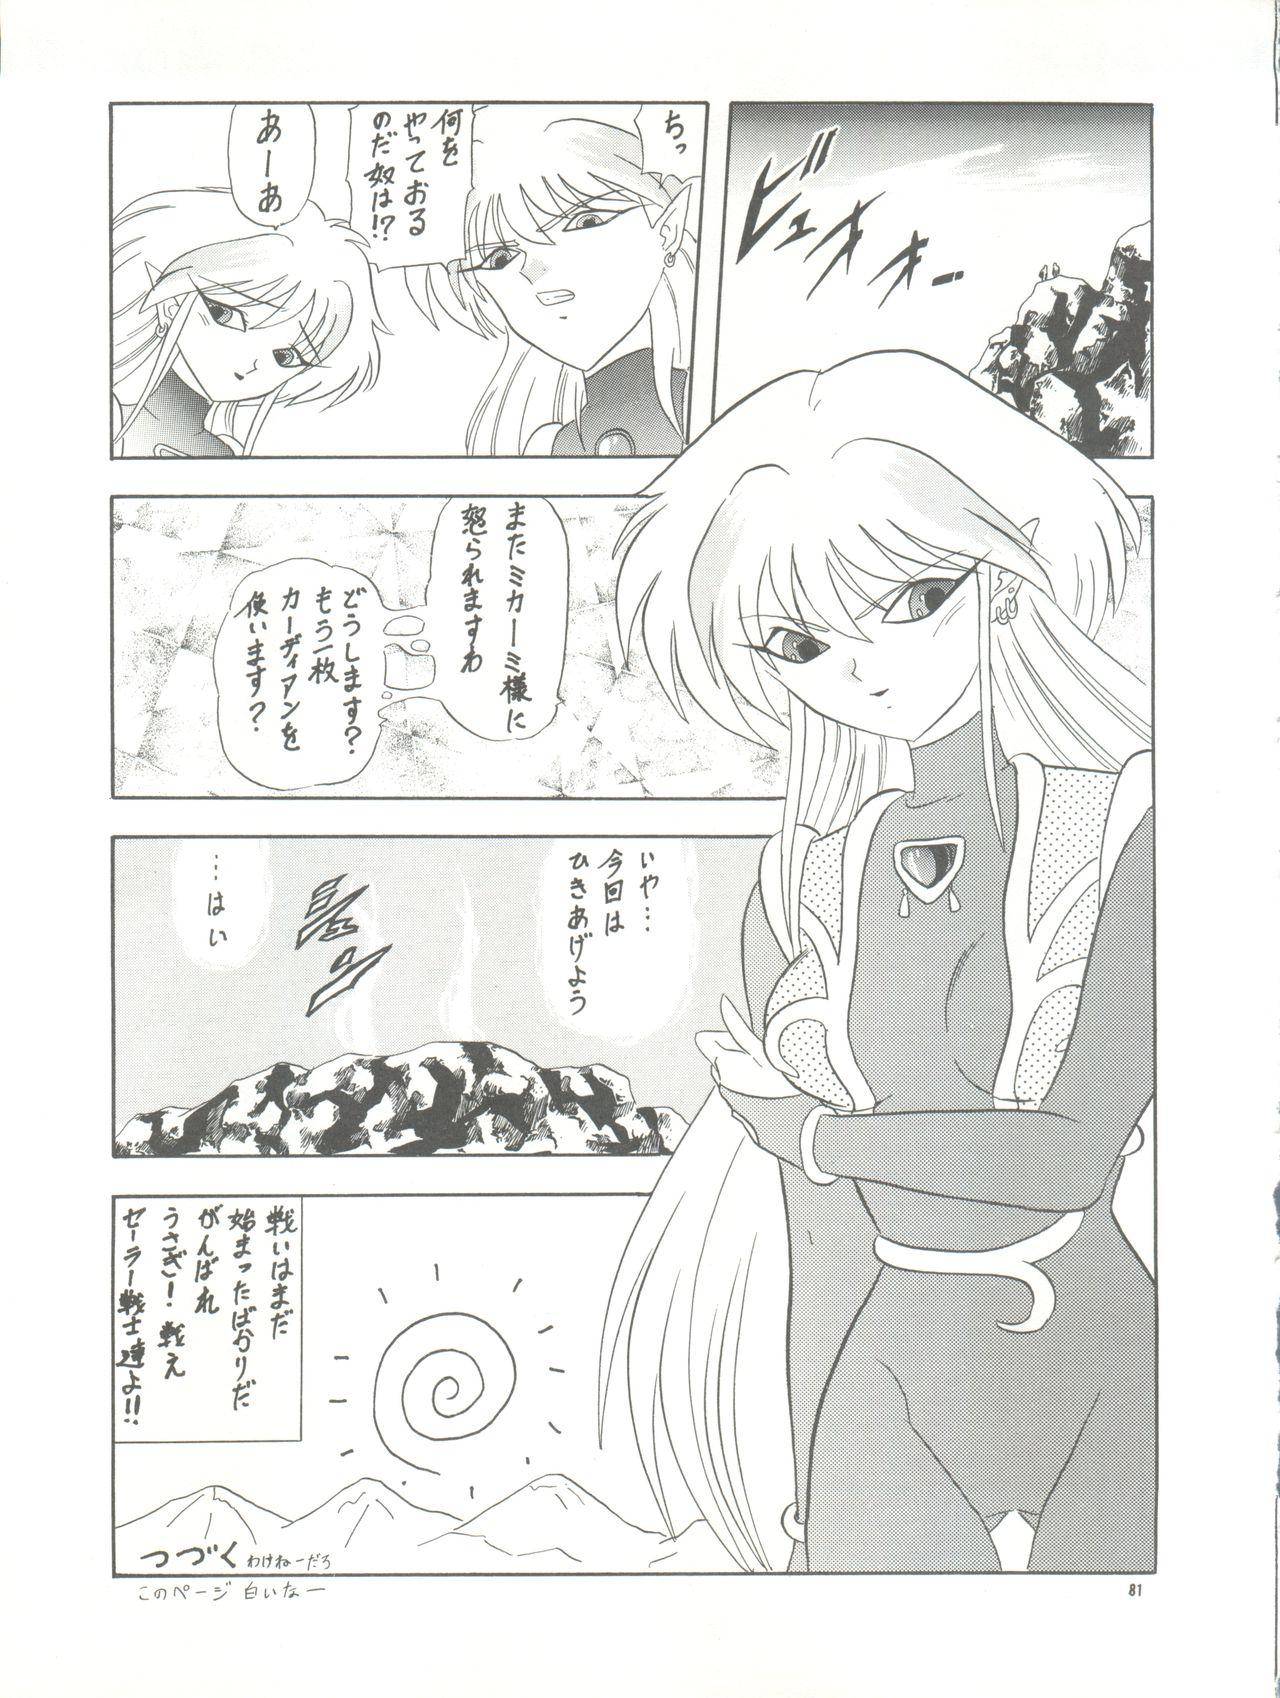 PUSSY CAT Vol. 26 Sailor Moon 3 80